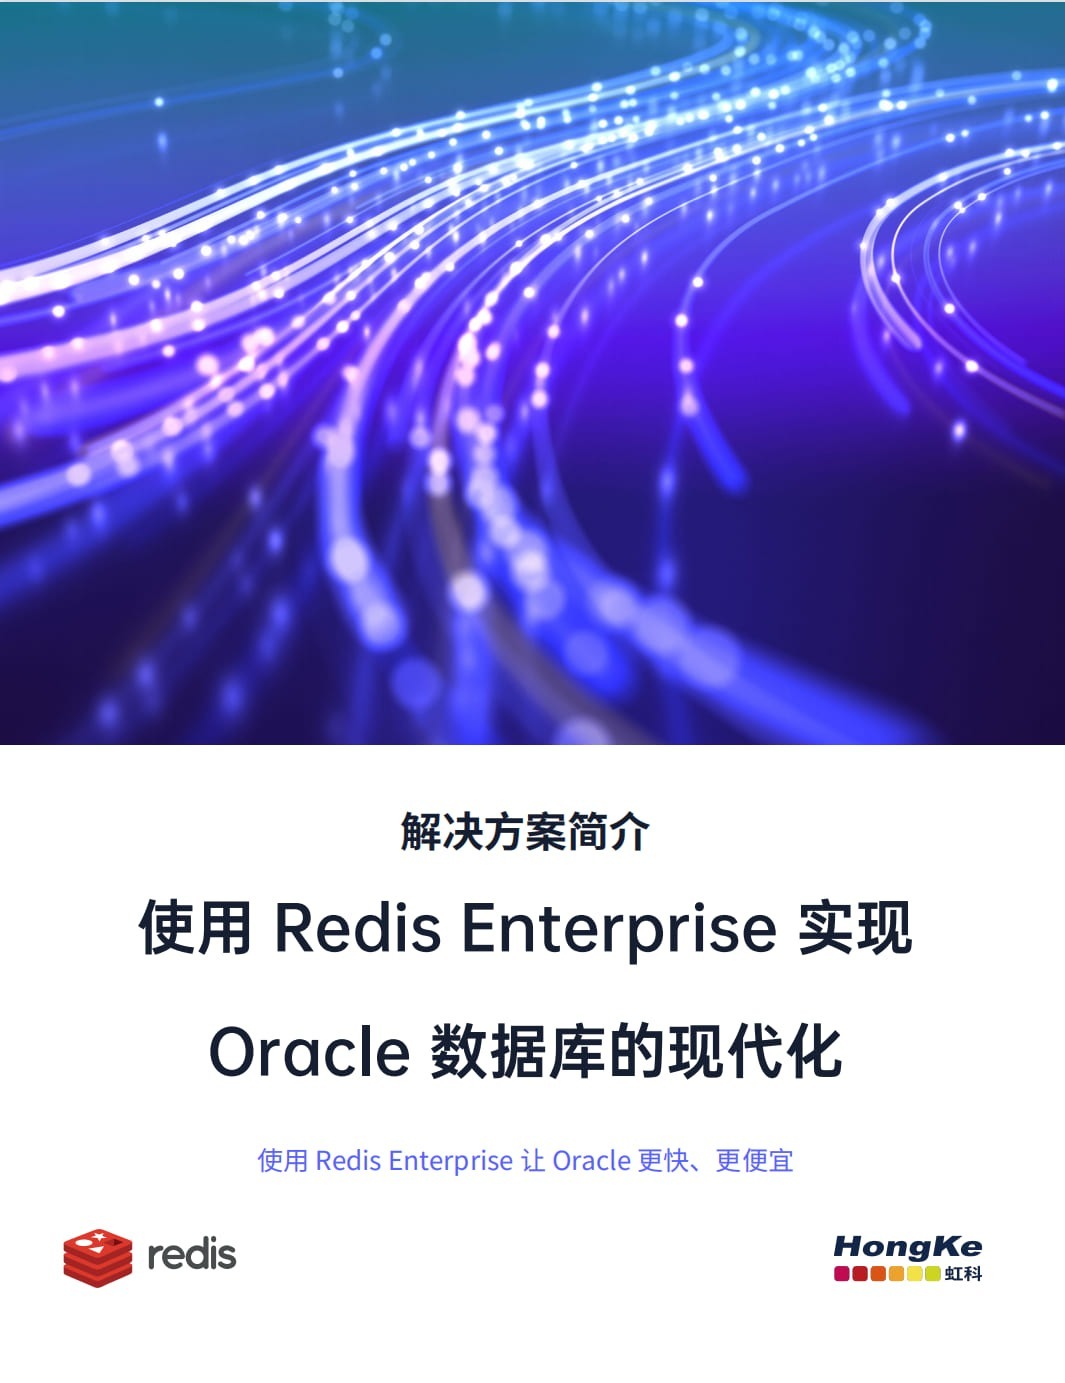 虹科Redis白皮书-使用Redis-Enterprise-实现Oracle数据库的现代化.jpg